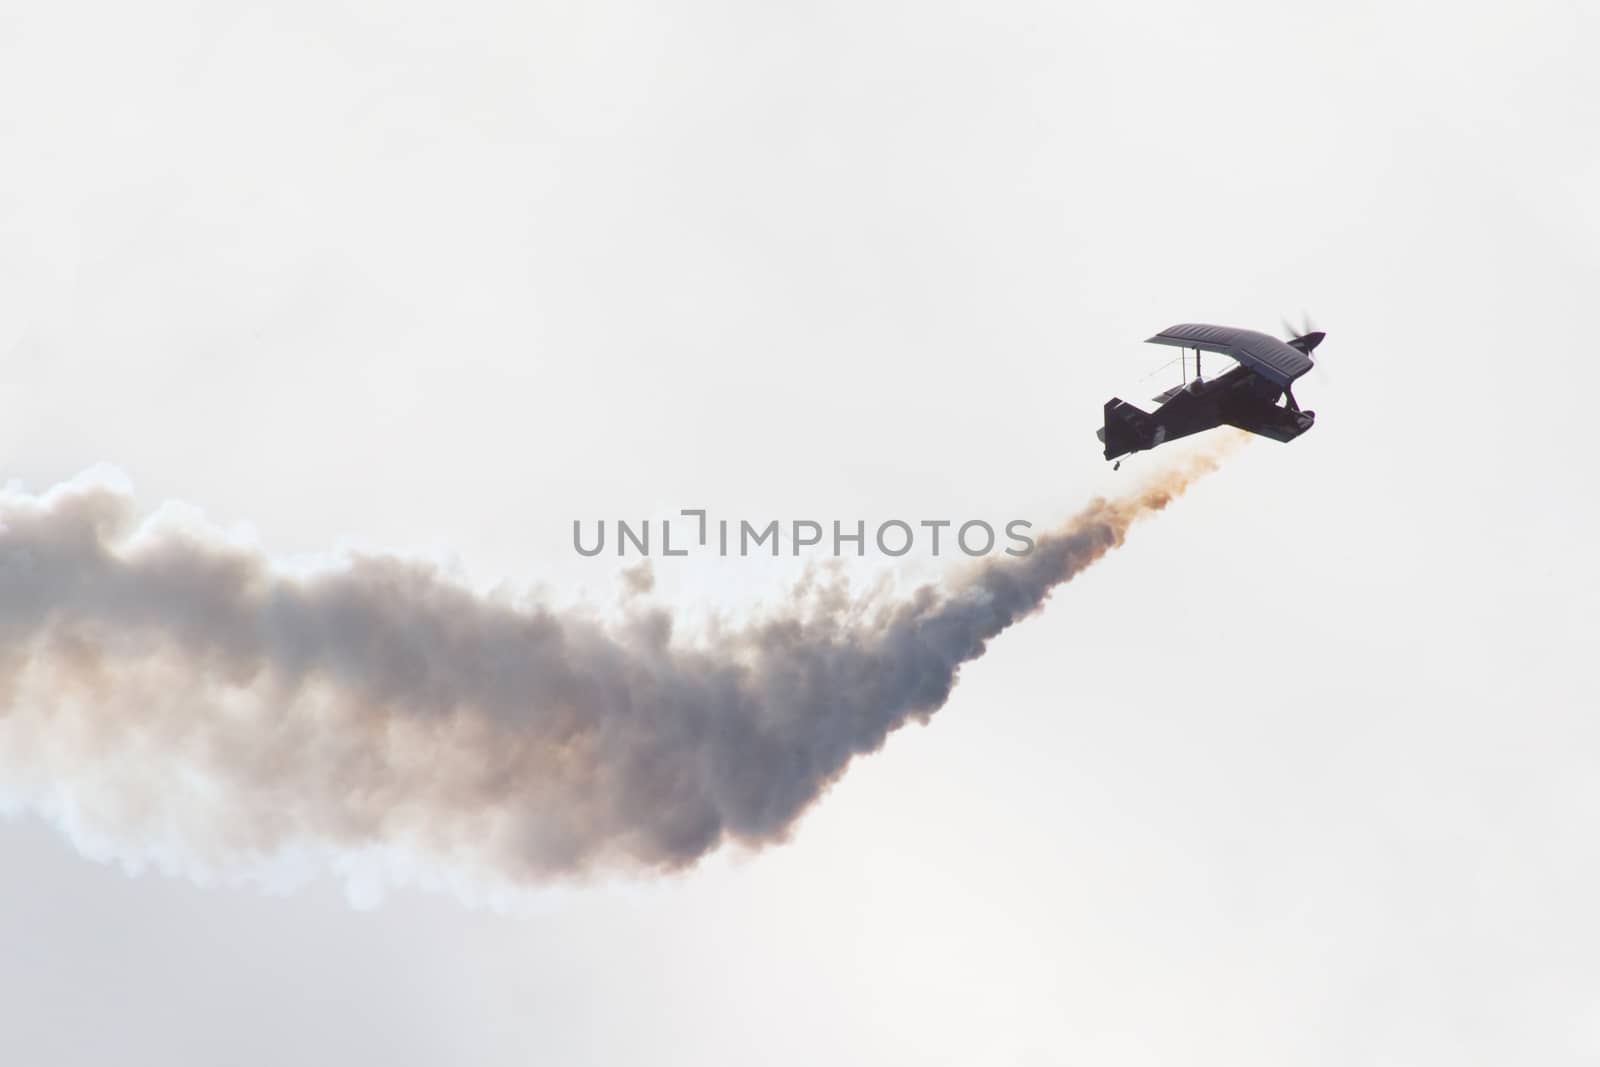 Biplane performing aerobatics with smoke